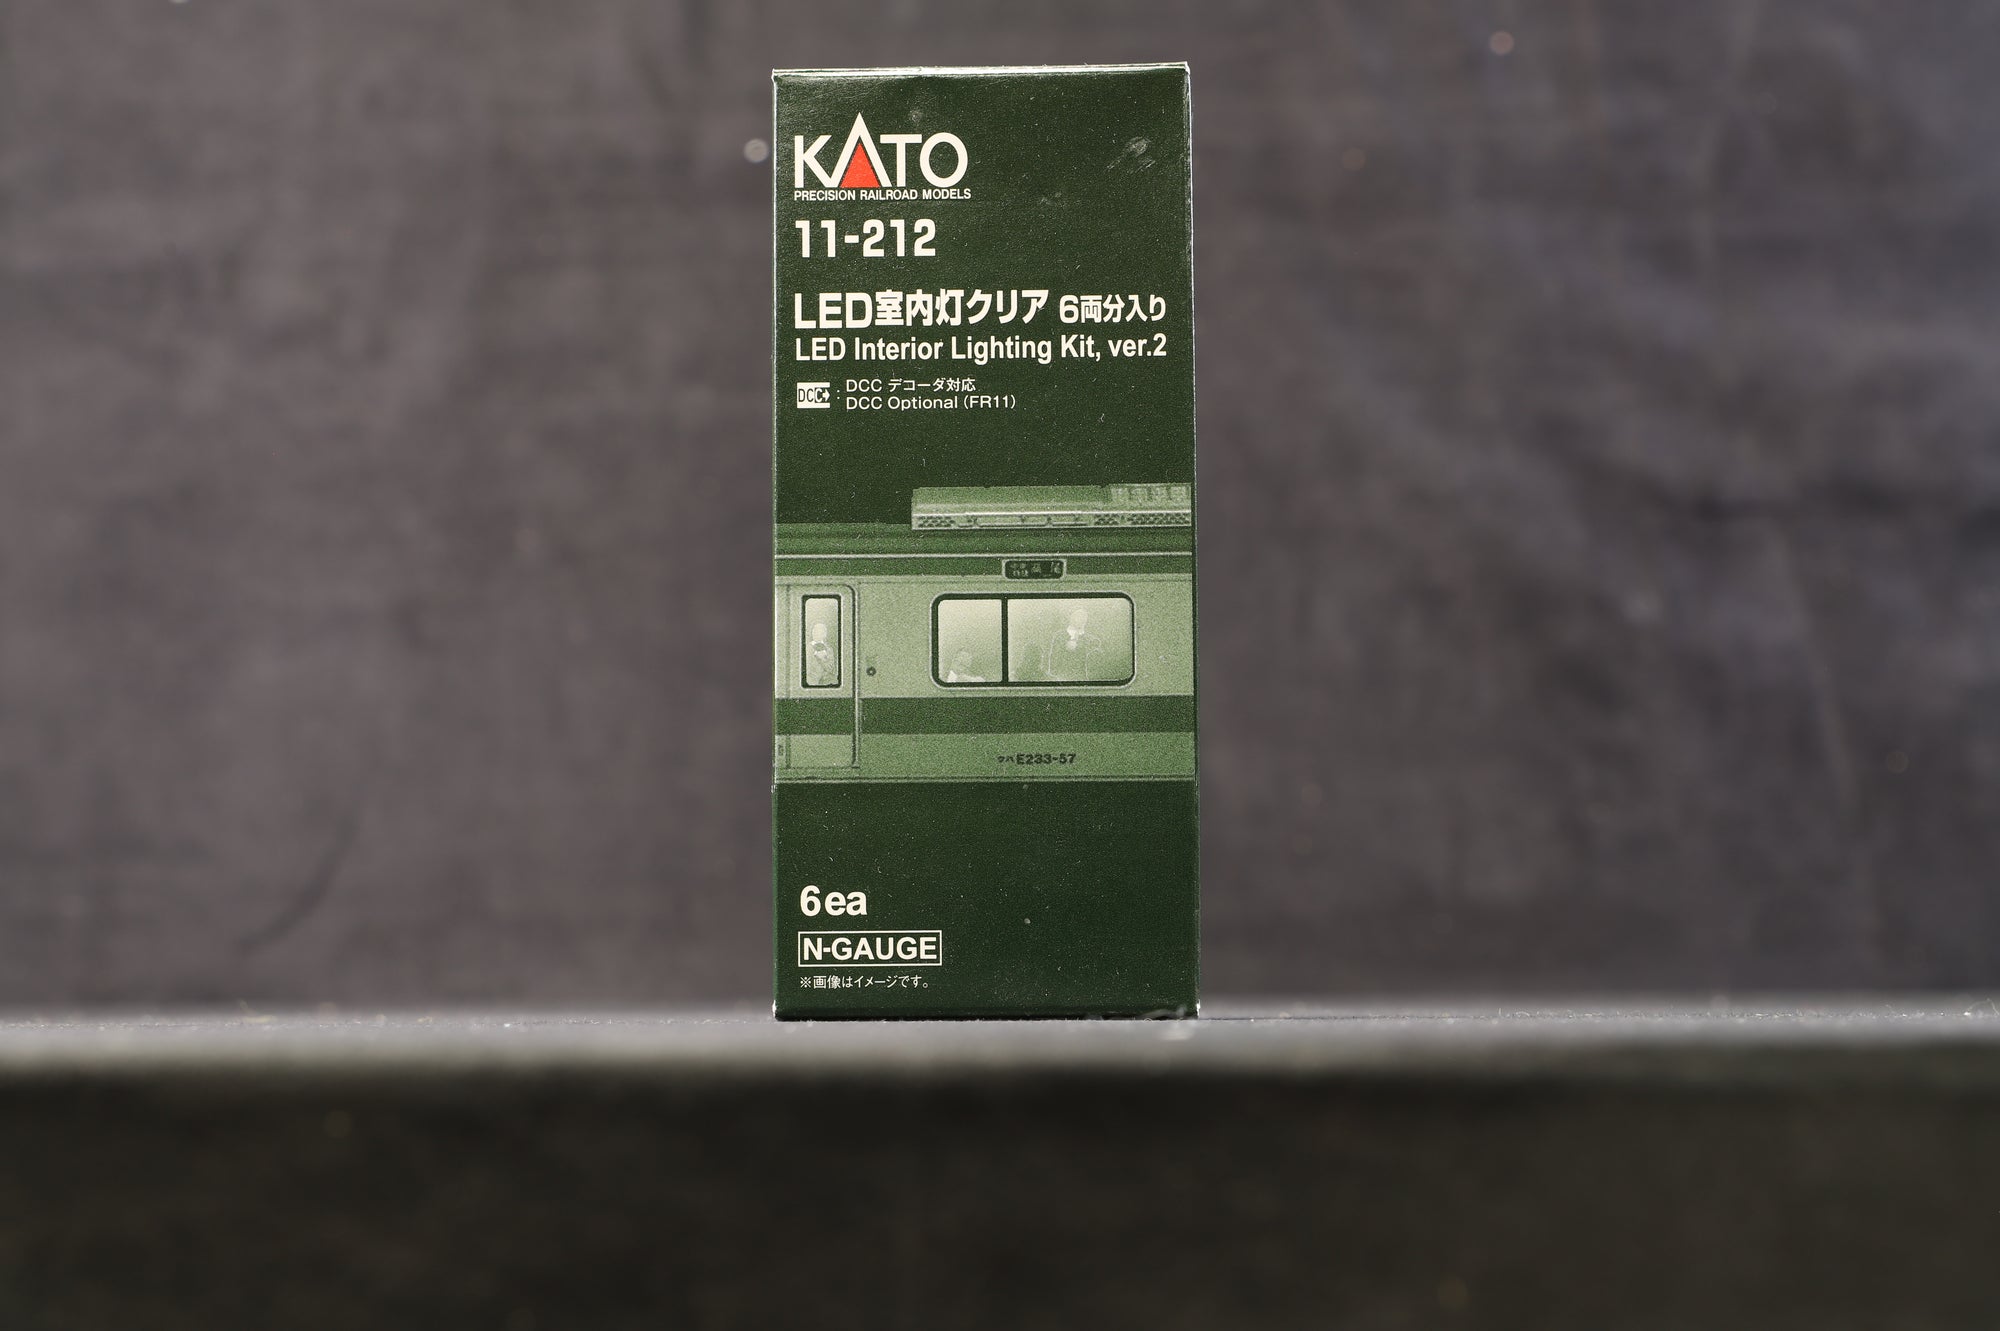 Kato 11-212 HO LED Interior Lighting Kit Ver.2